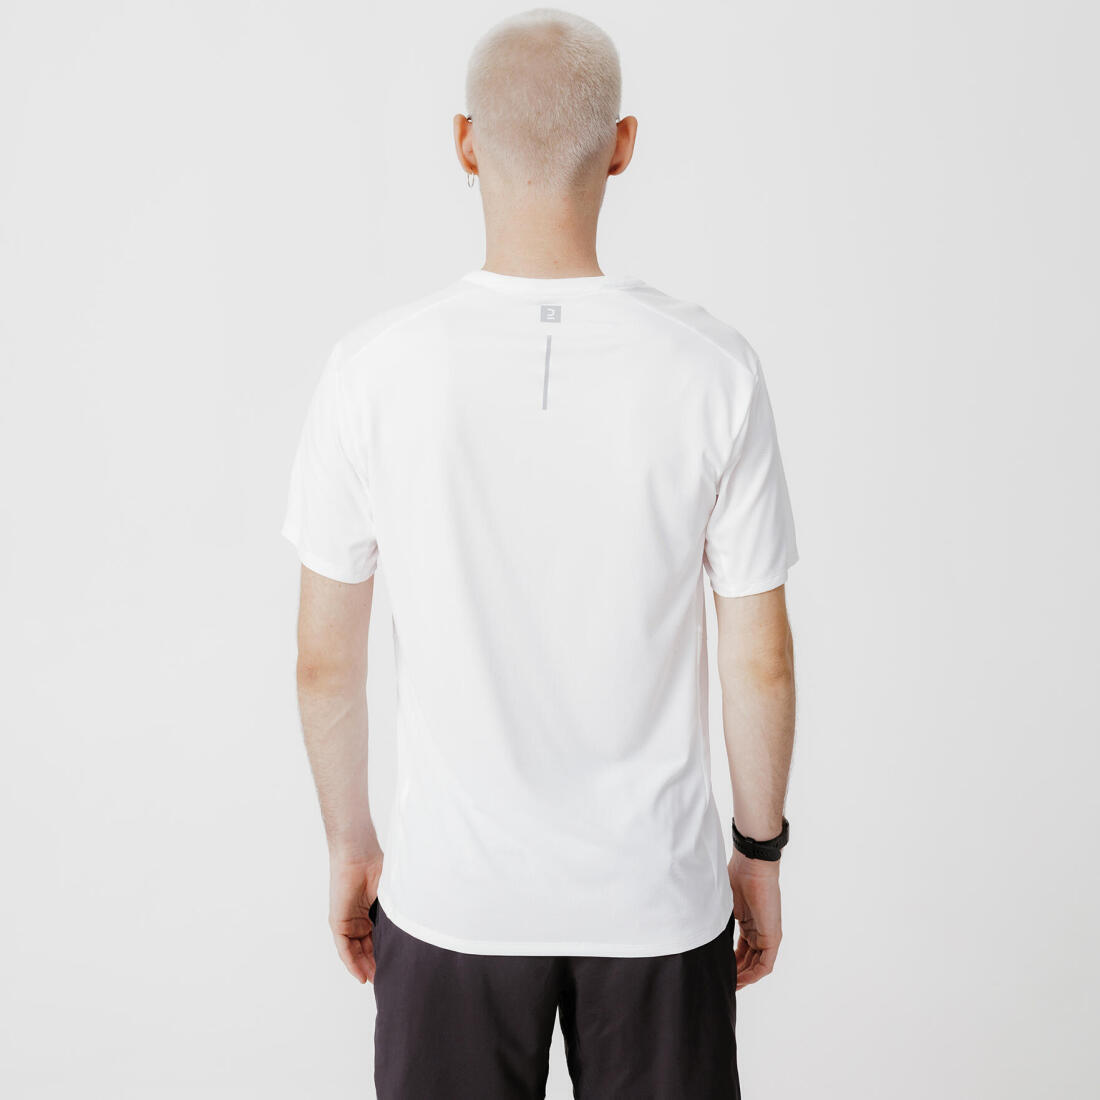 KALENJI(カレンジ) ランニング Tシャツ DRY+ メンズ